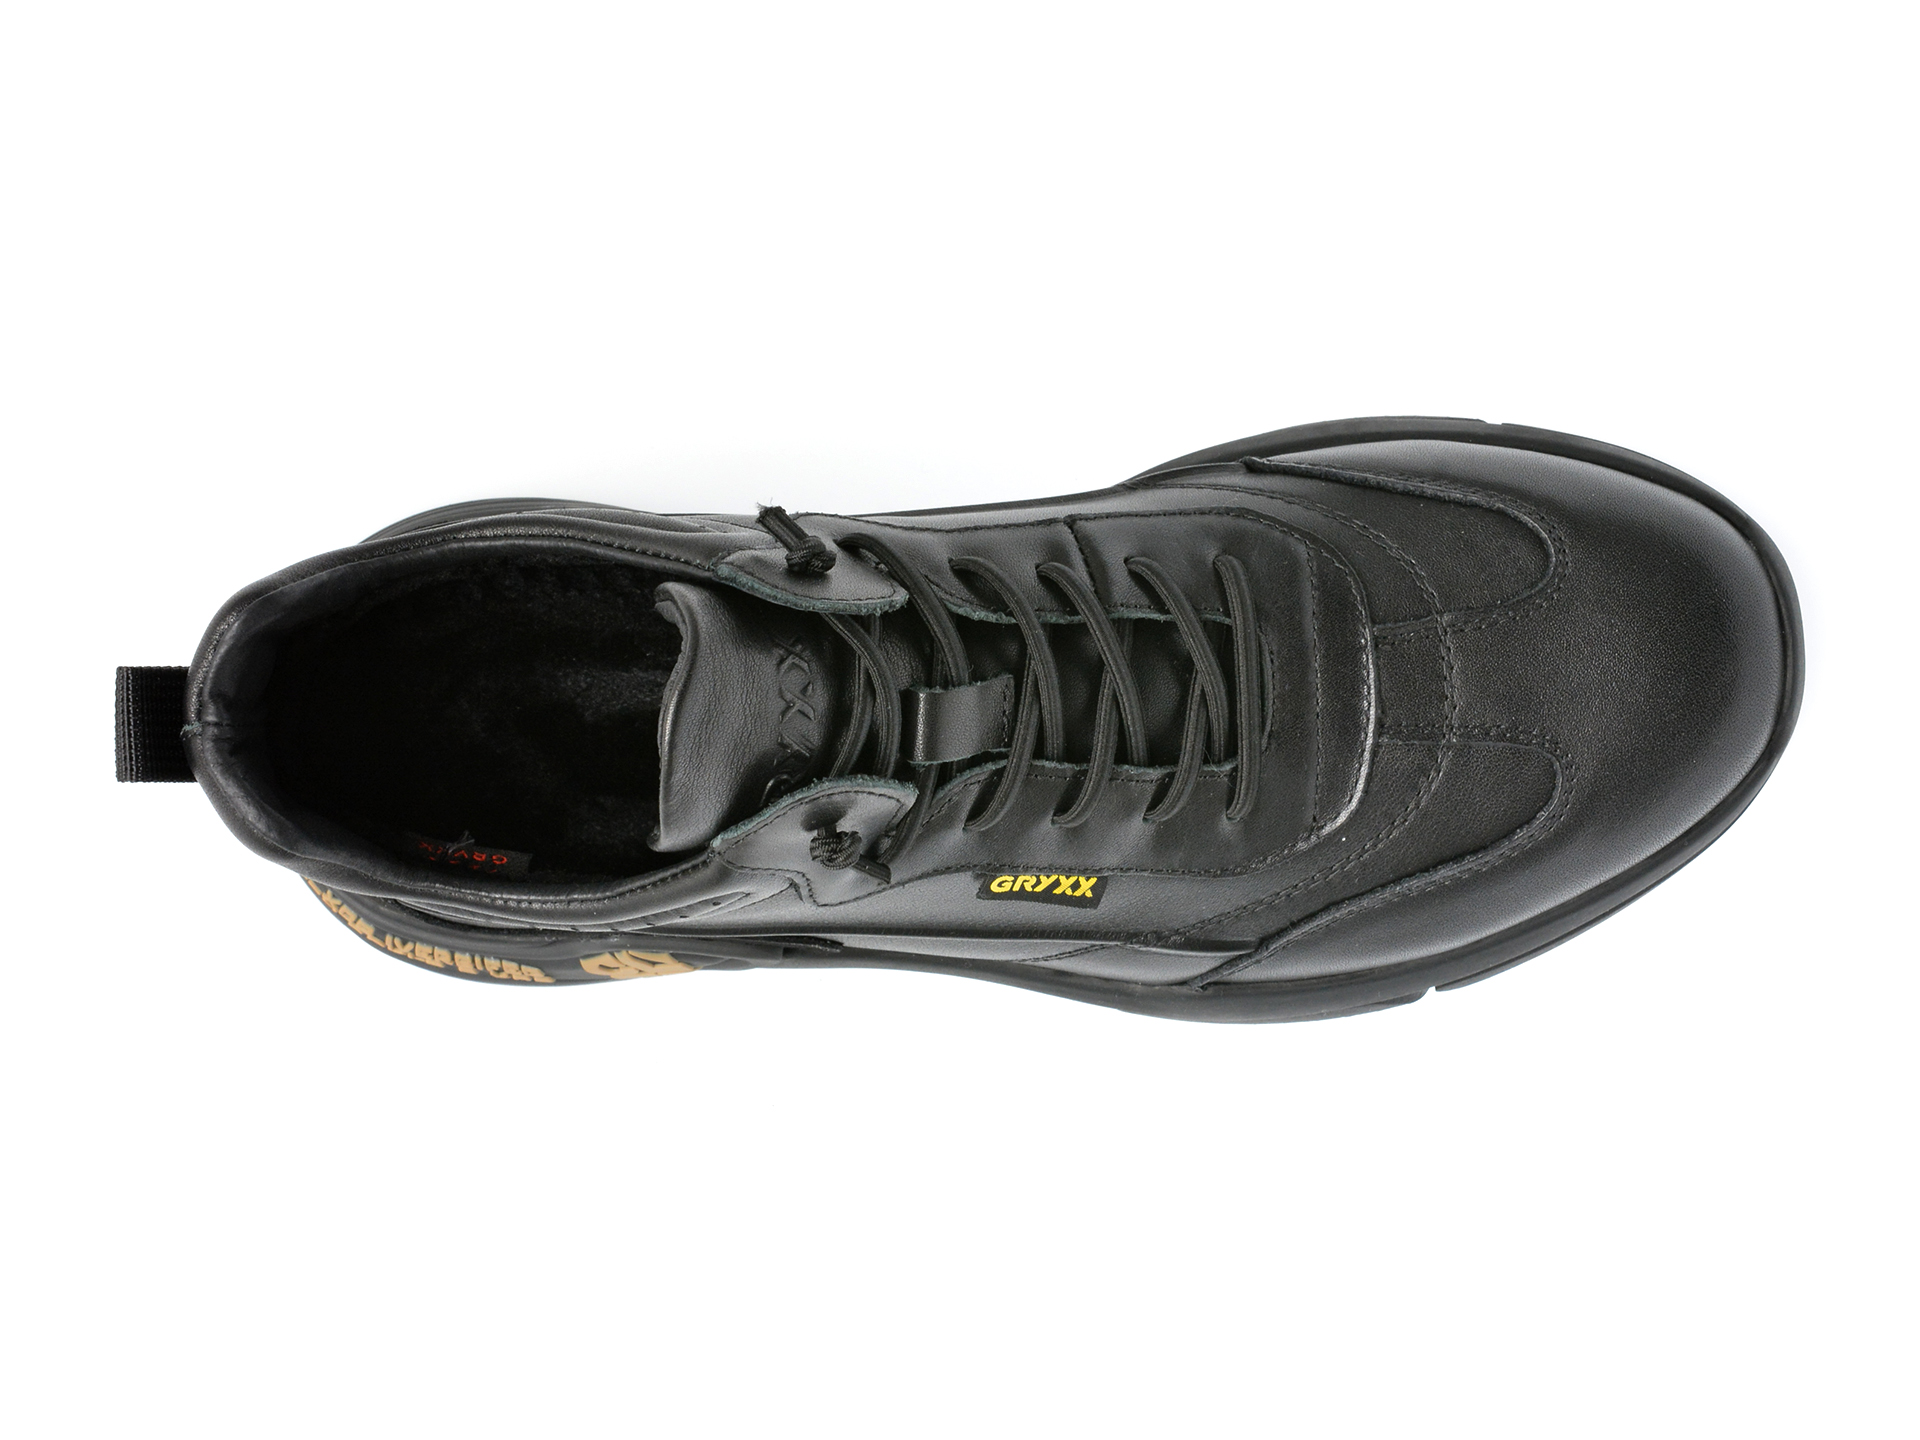 Poze Pantofi sport OTTER negri, J200006, din piele naturala Tezyo